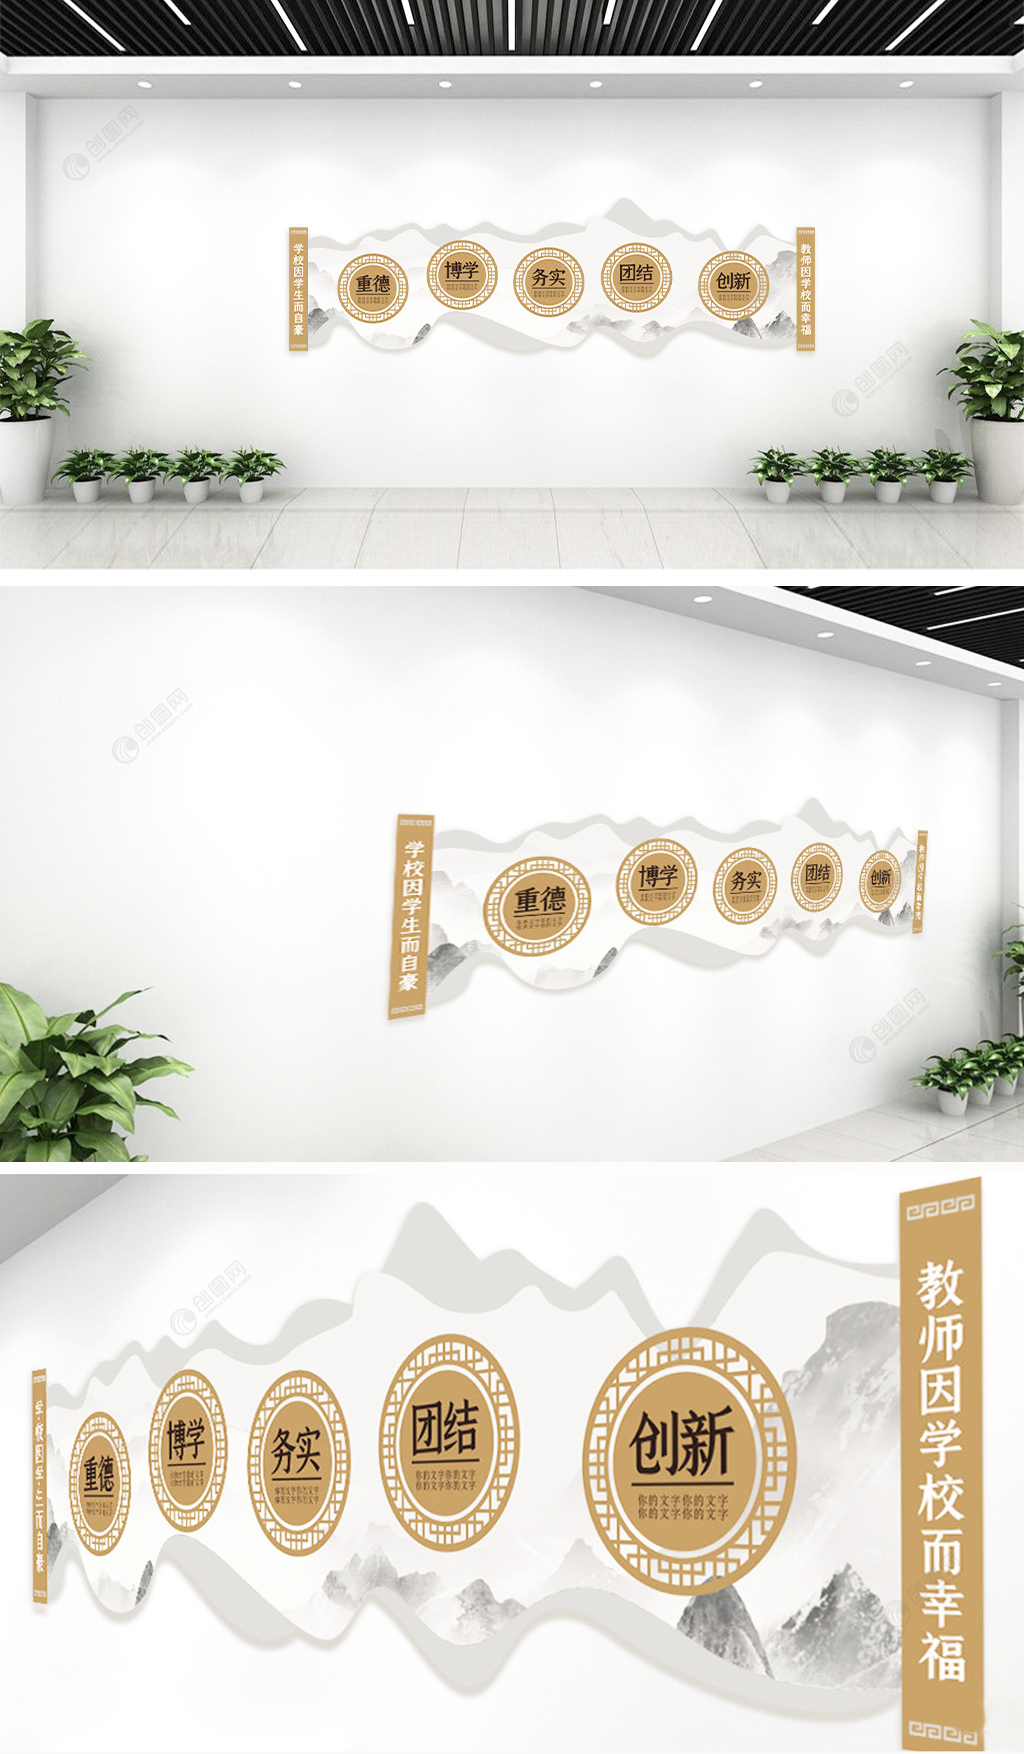 校园文明礼仪中国风文化墙设计